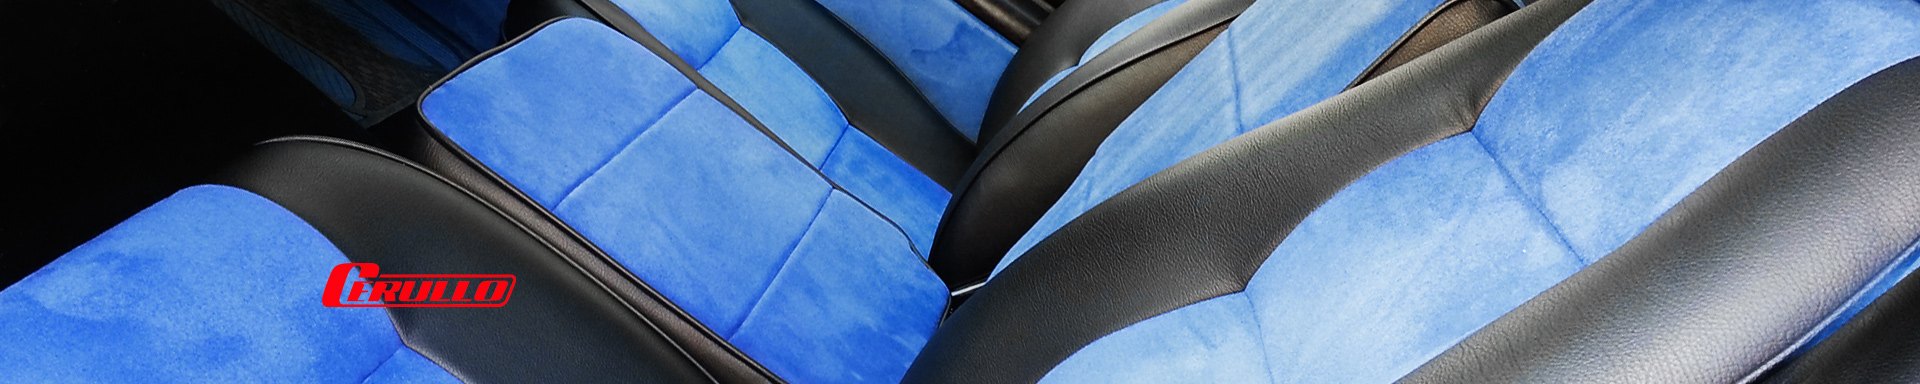 Cerullo Seat Covers